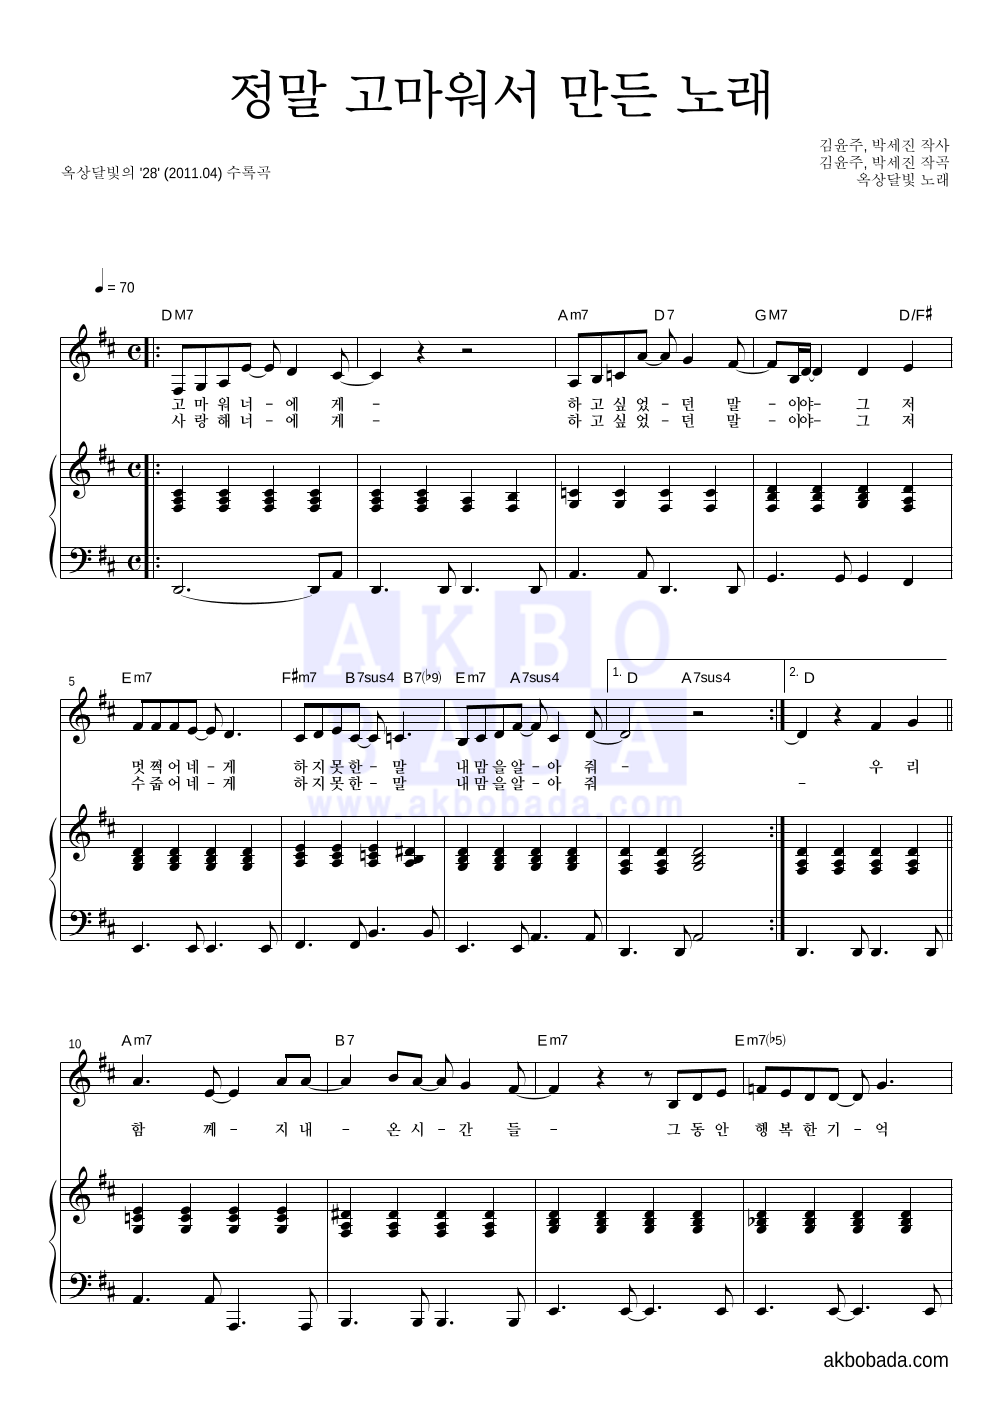 옥상달빛 - 정말 고마워서 만든 노래 피아노 3단 악보 